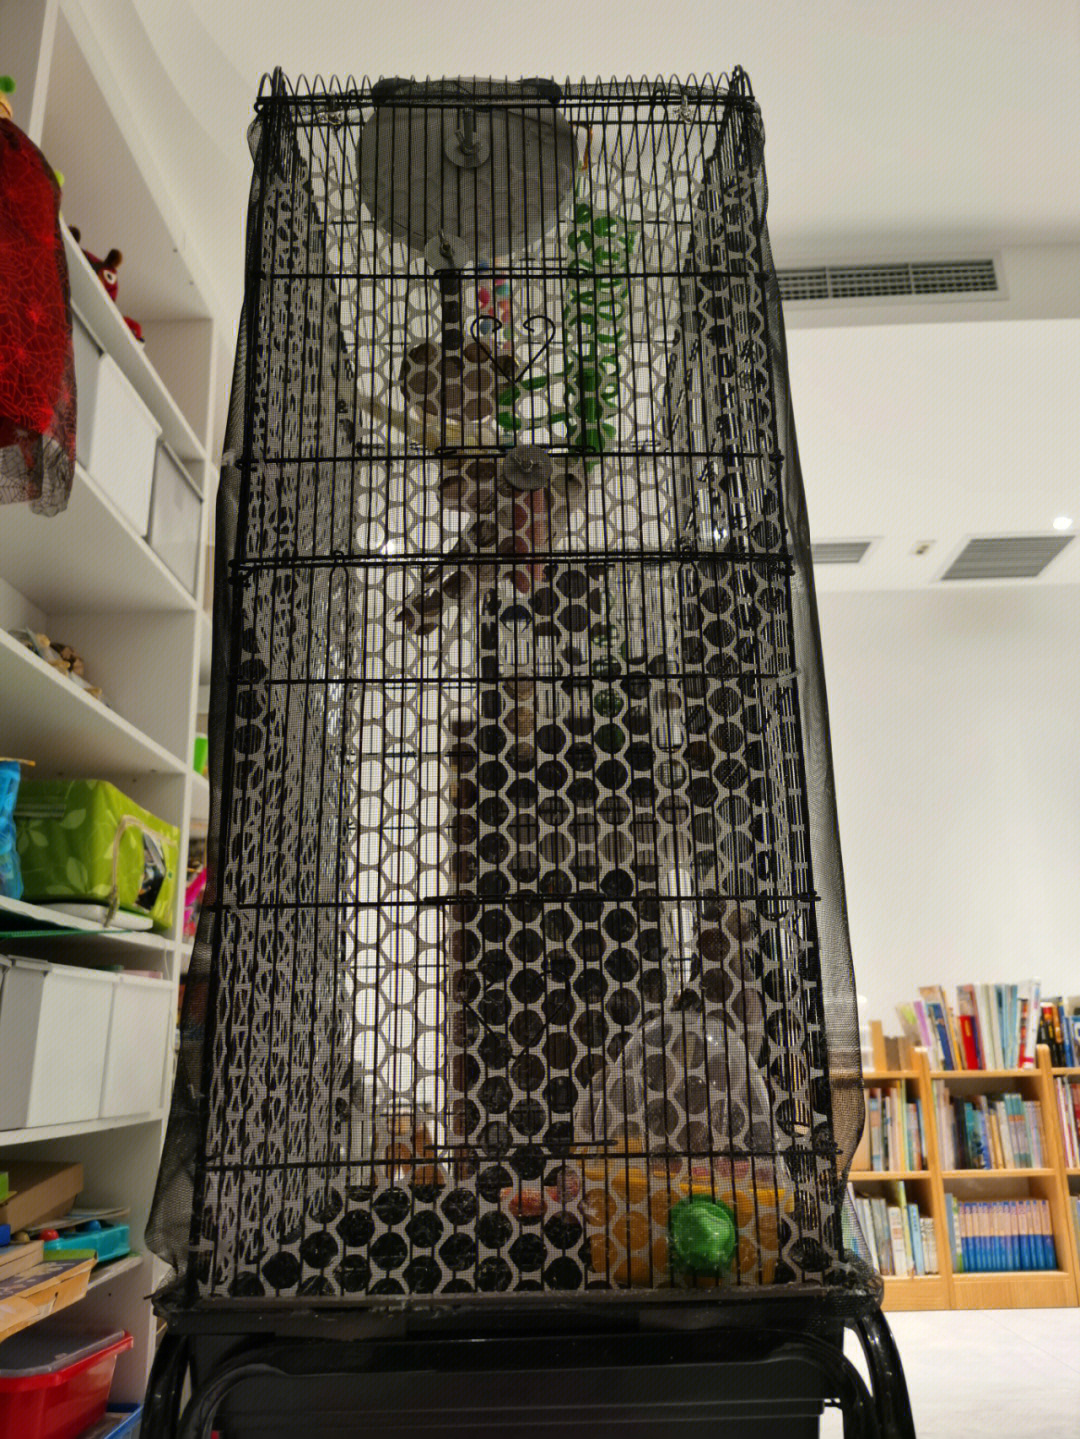 之前发布过关于鸟笼防溅网的制作,上次用的是强磁条吸在笼子上,后来